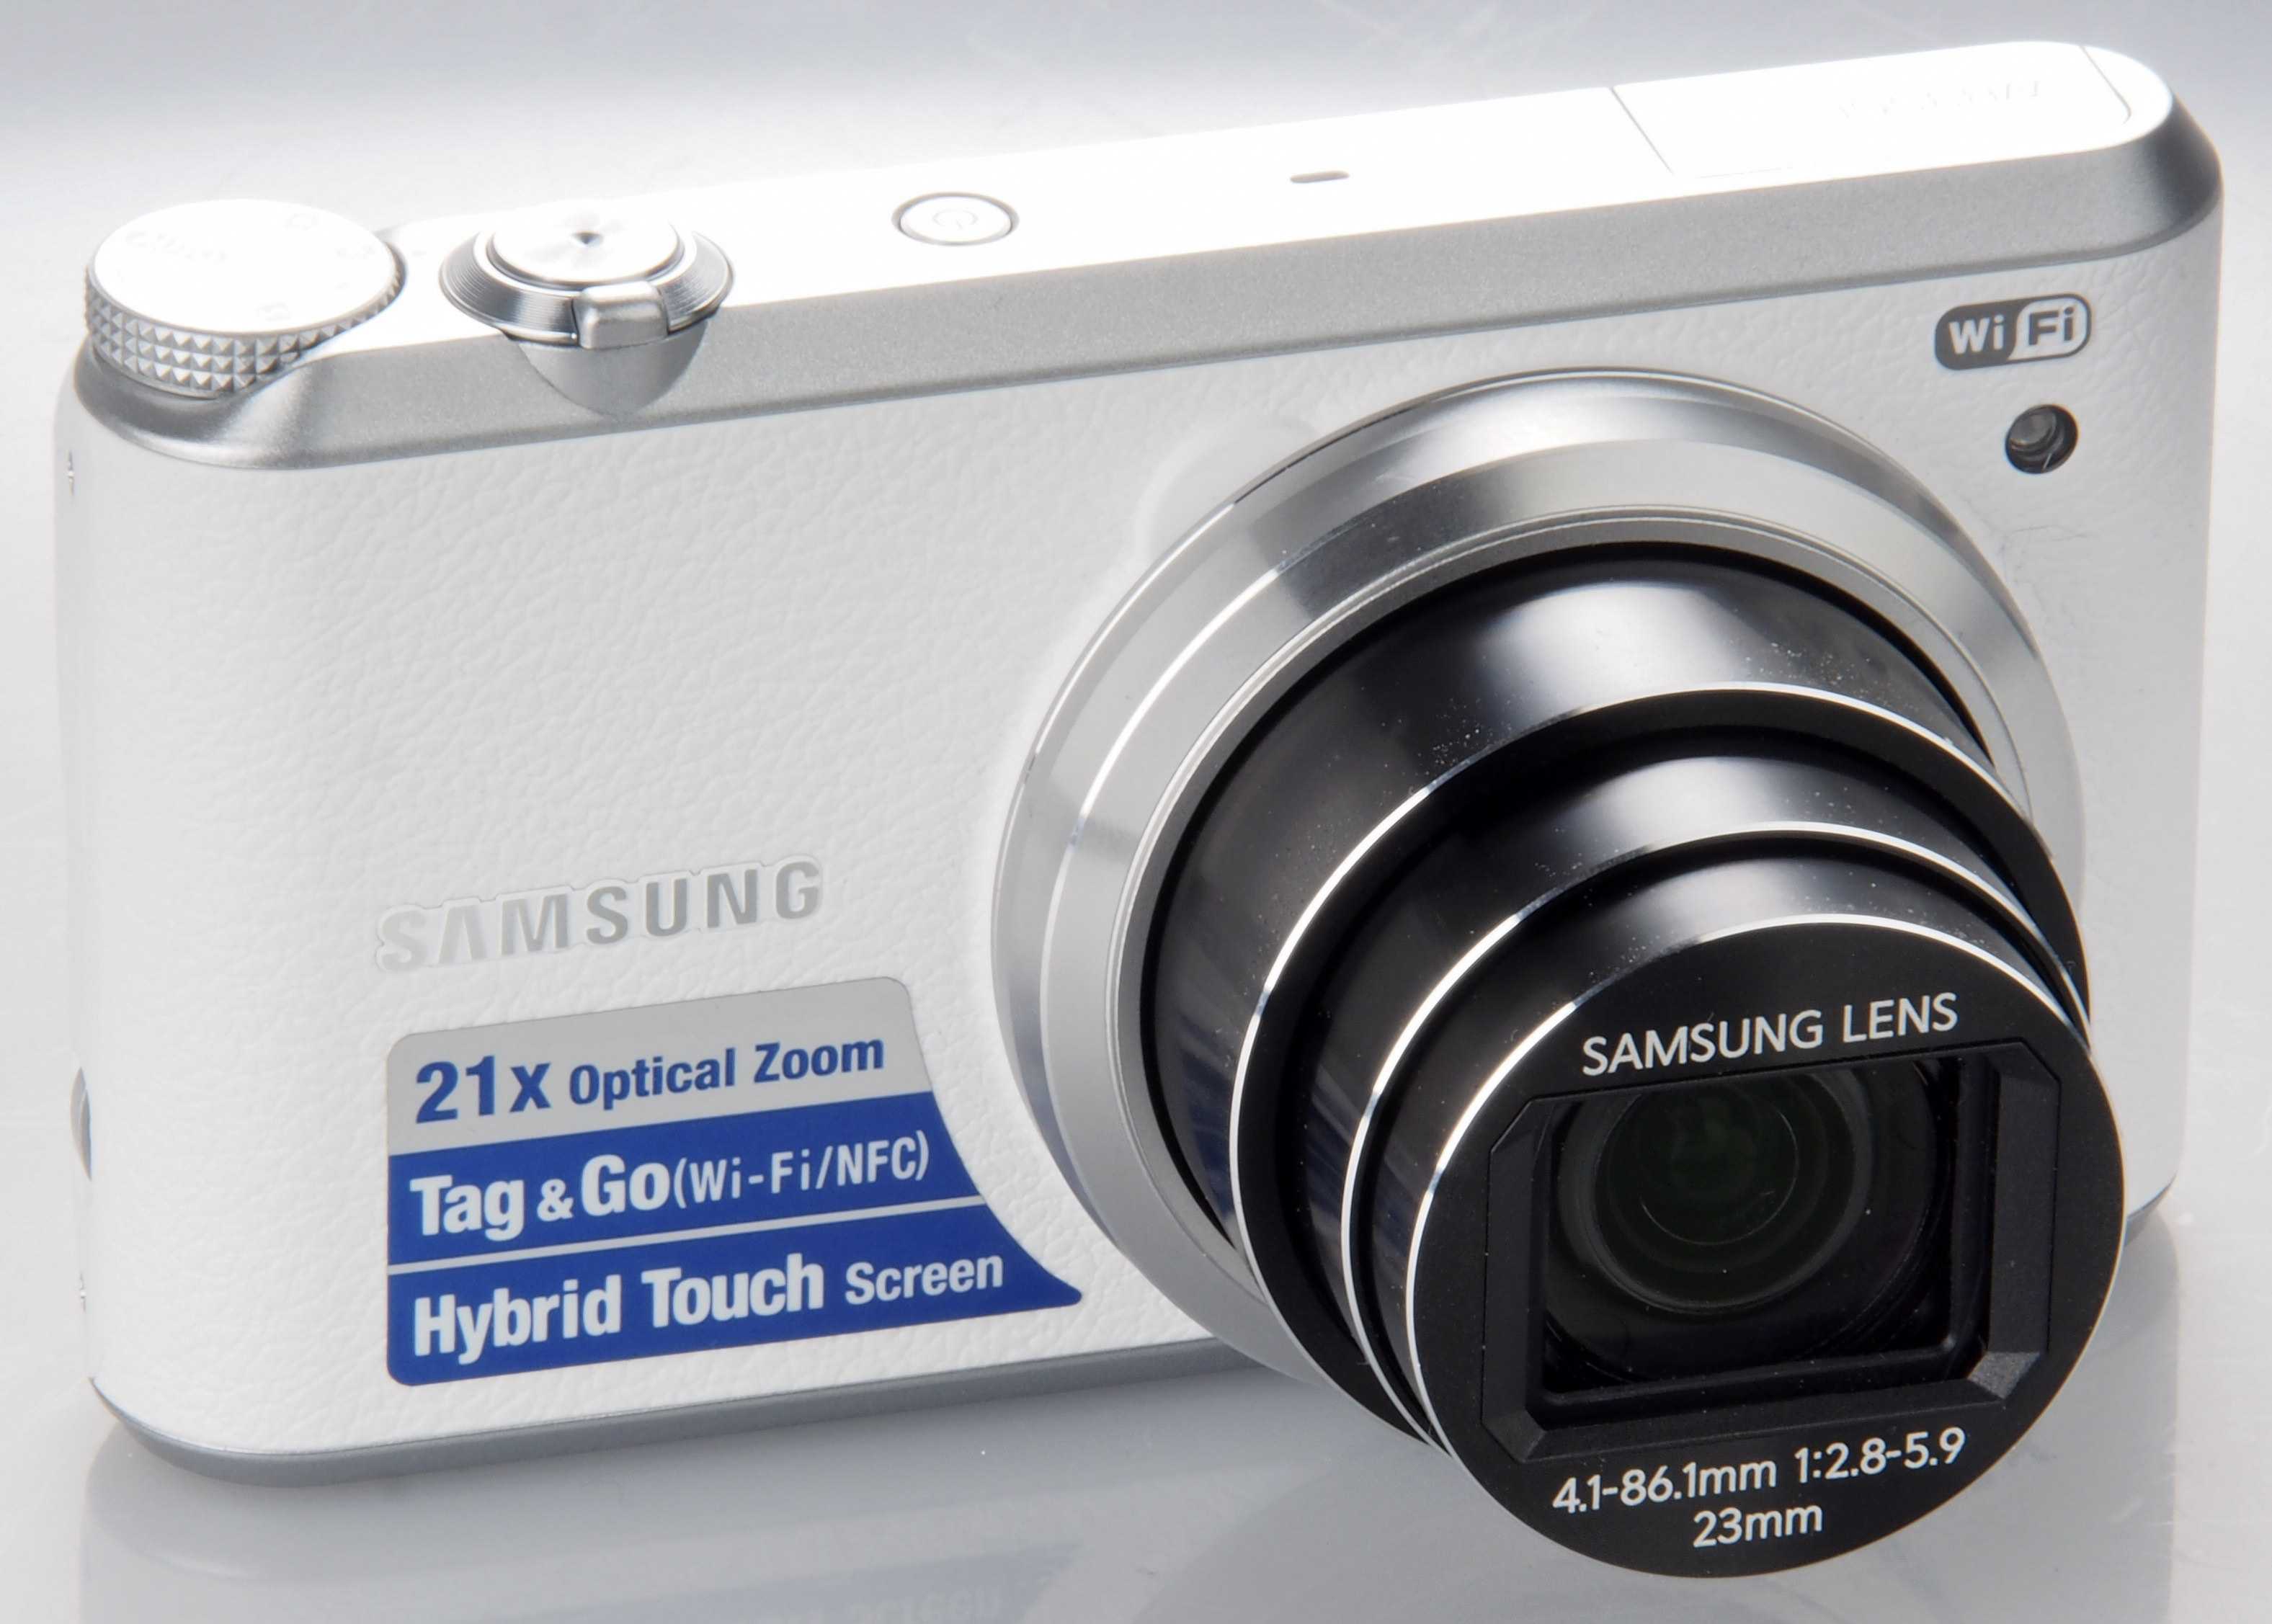 Samsung wb350f (черный) - купить , скидки, цена, отзывы, обзор, характеристики - фотоаппараты цифровые